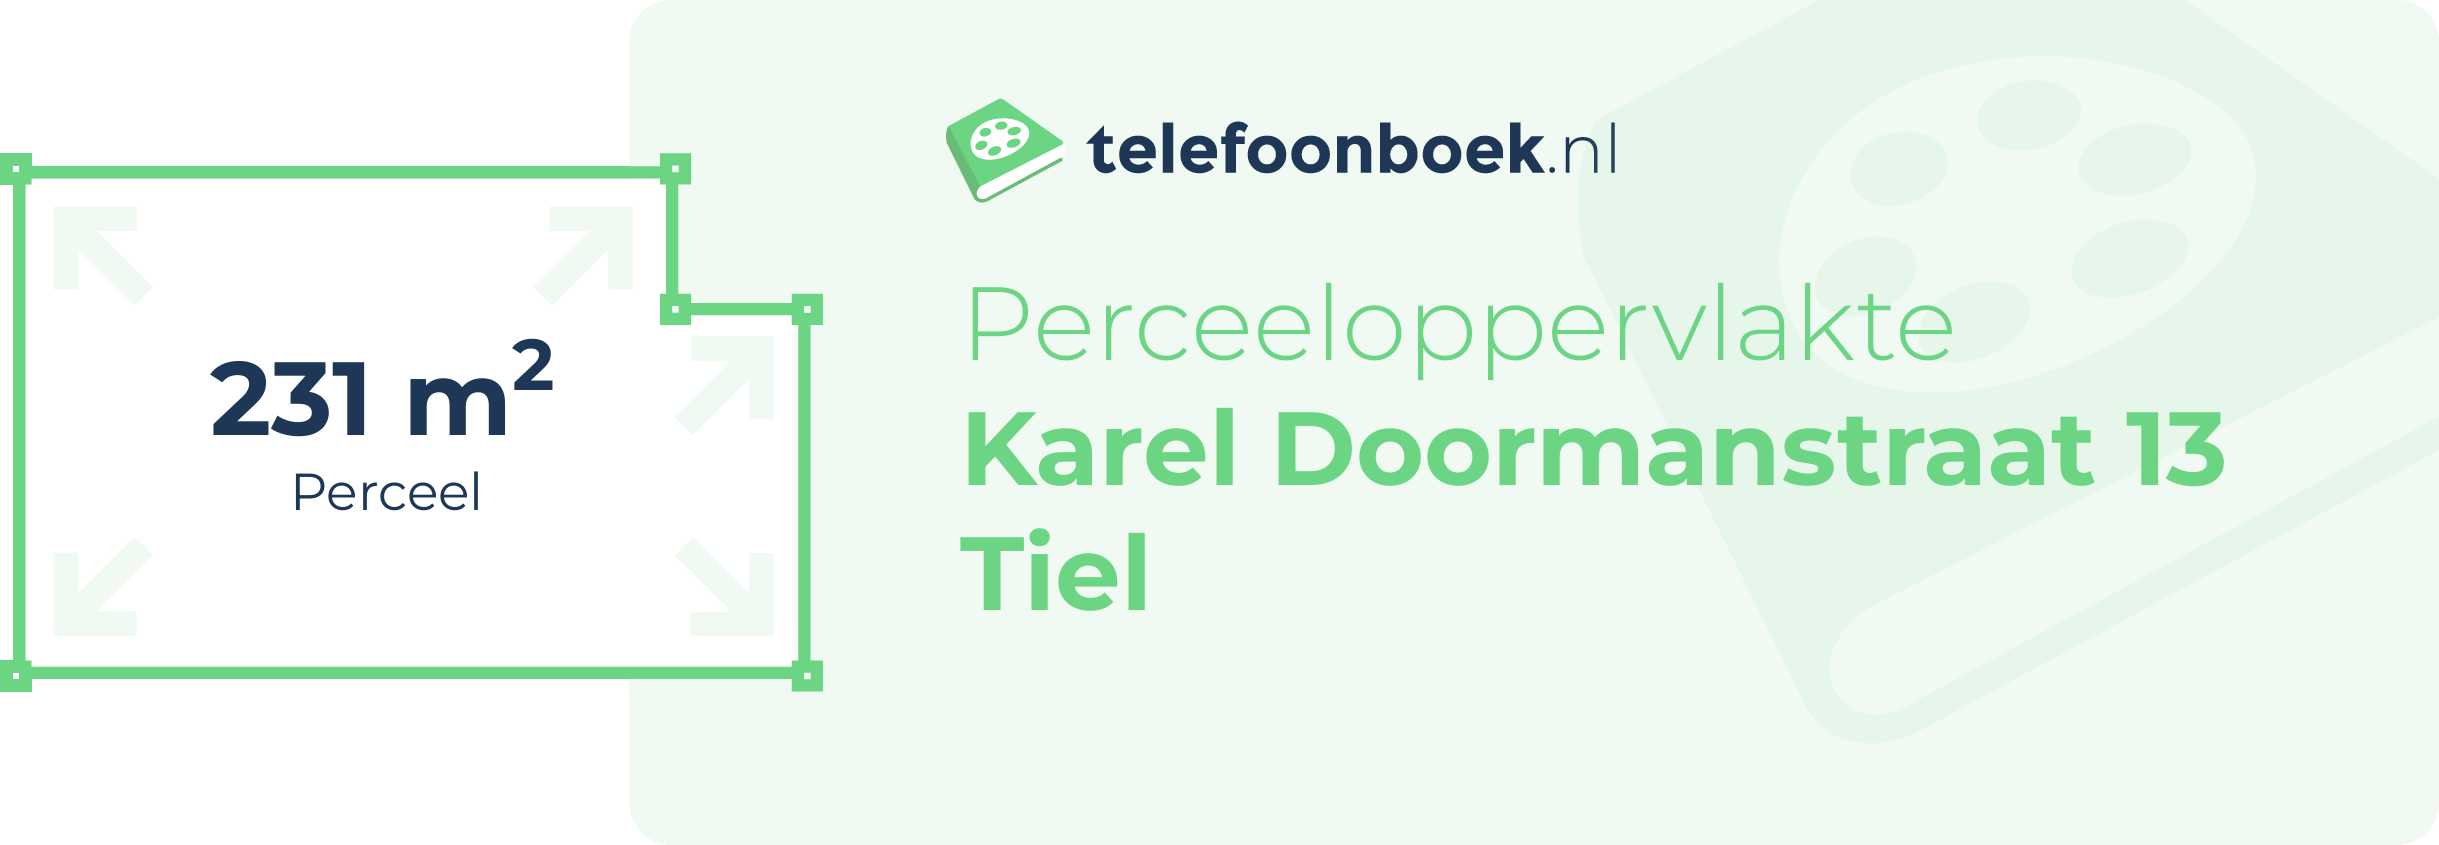 Perceeloppervlakte Karel Doormanstraat 13 Tiel